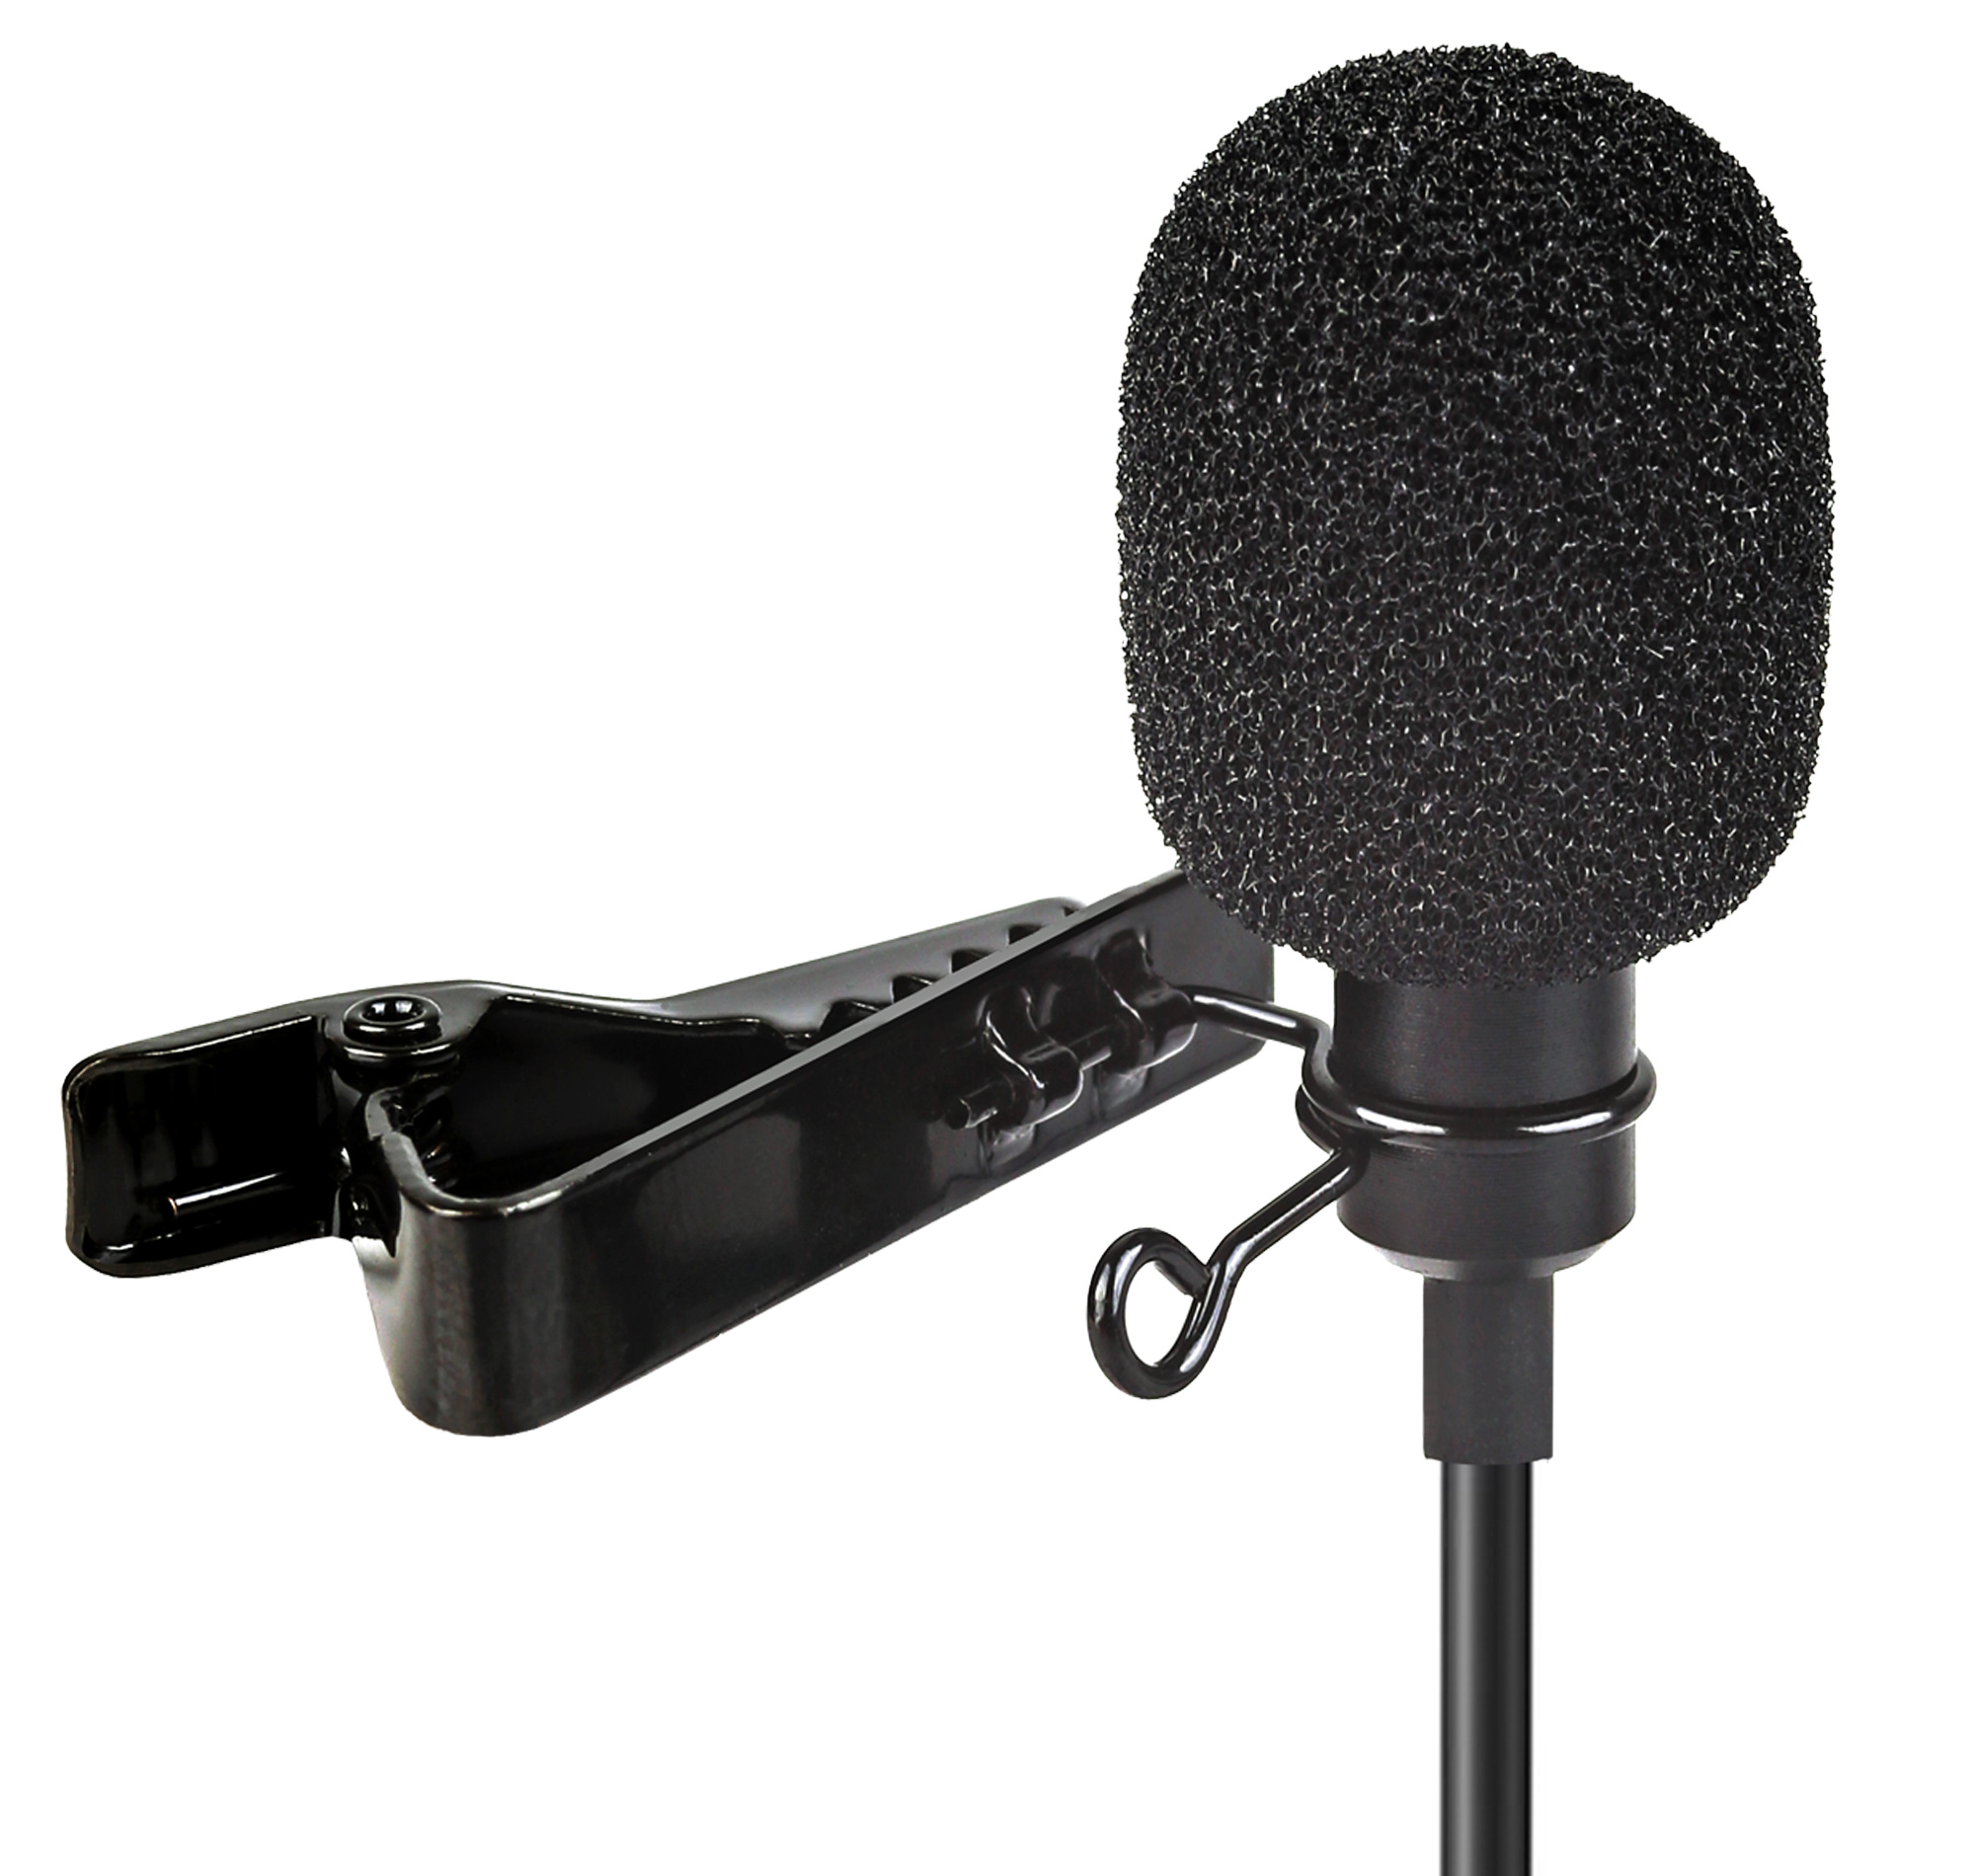 ayex Lavalier-Mikrofon perfekt für Kamera, Camcorder und PC z.B. für Interviews, Livestreams geeignet LV-1 3,5mm for Camera